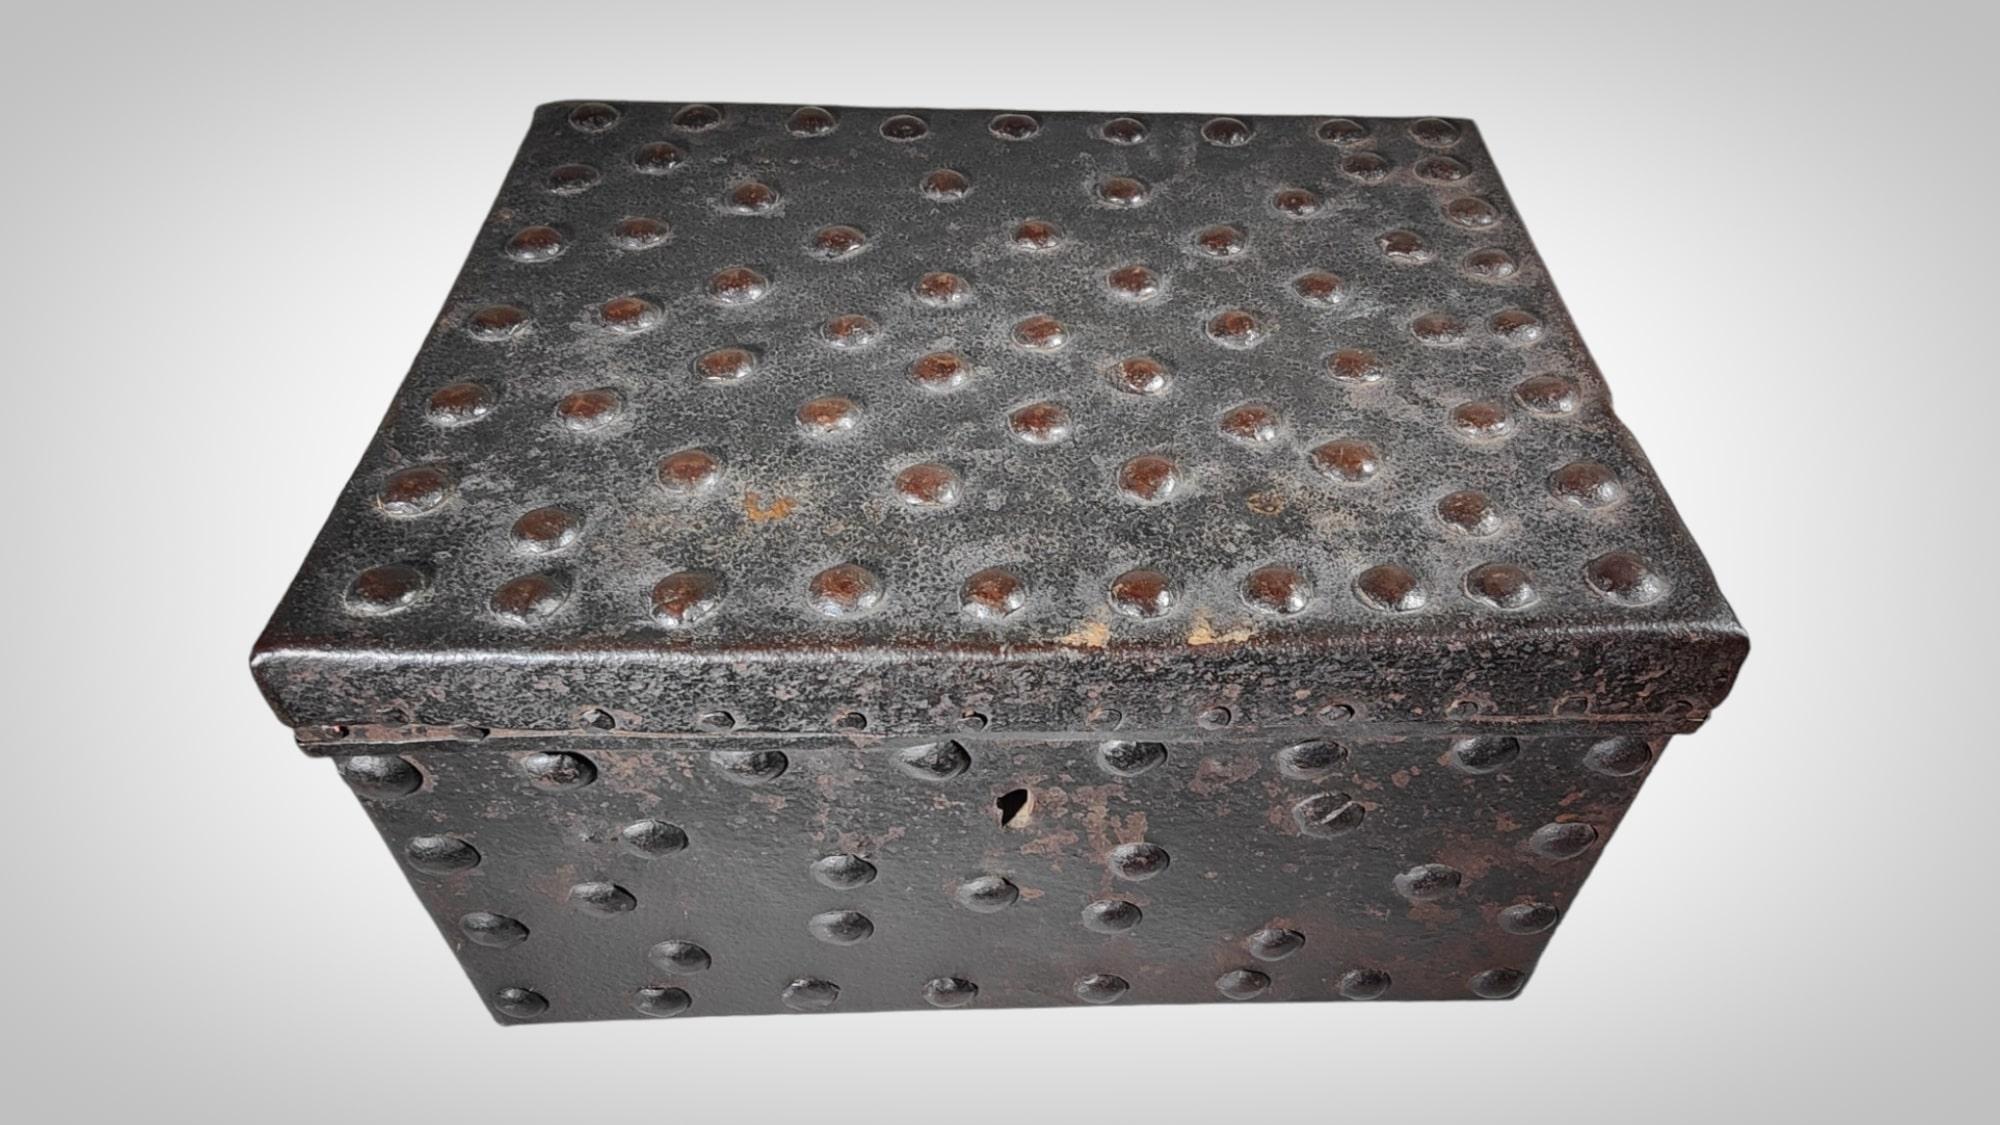 Boîte en fer forgé avec secret 18ème siècle
Boîte en fer forgé riveté. L'un des rivets se déplace vers le haut et fait bouger un mécanisme interne pour s'ouvrir. Le mécanisme est incomplet. XVIIIe siècle. Dimensions : 35x25x17 cm